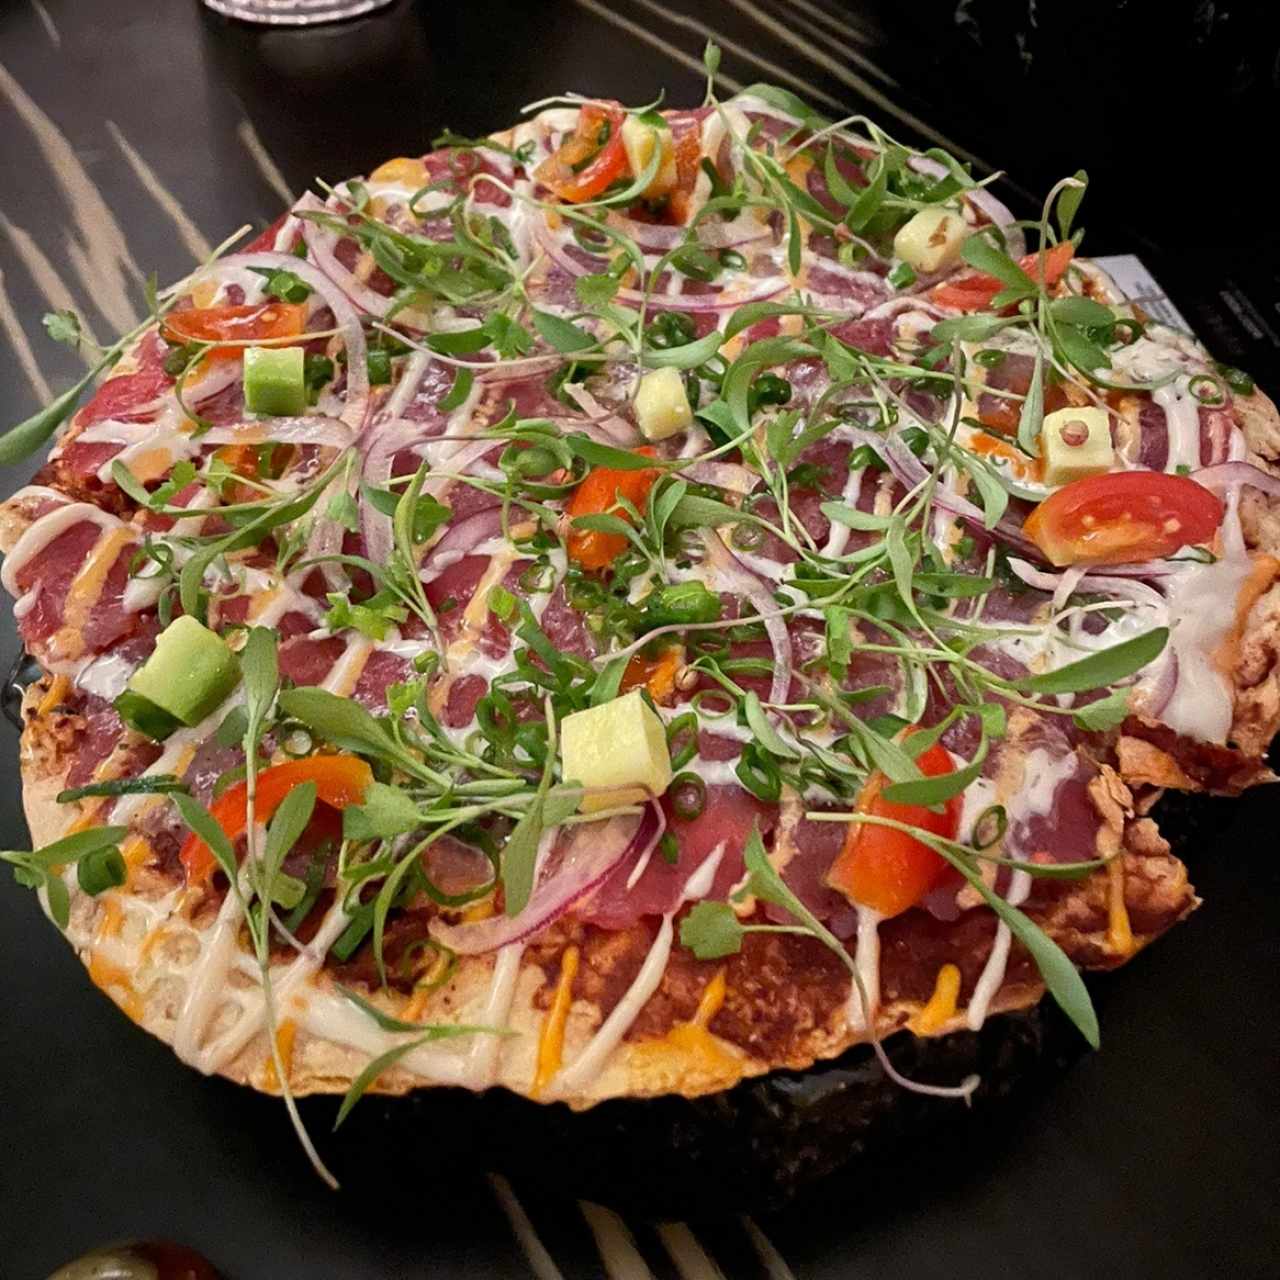 To Share - Salvaje Japanese Pizza